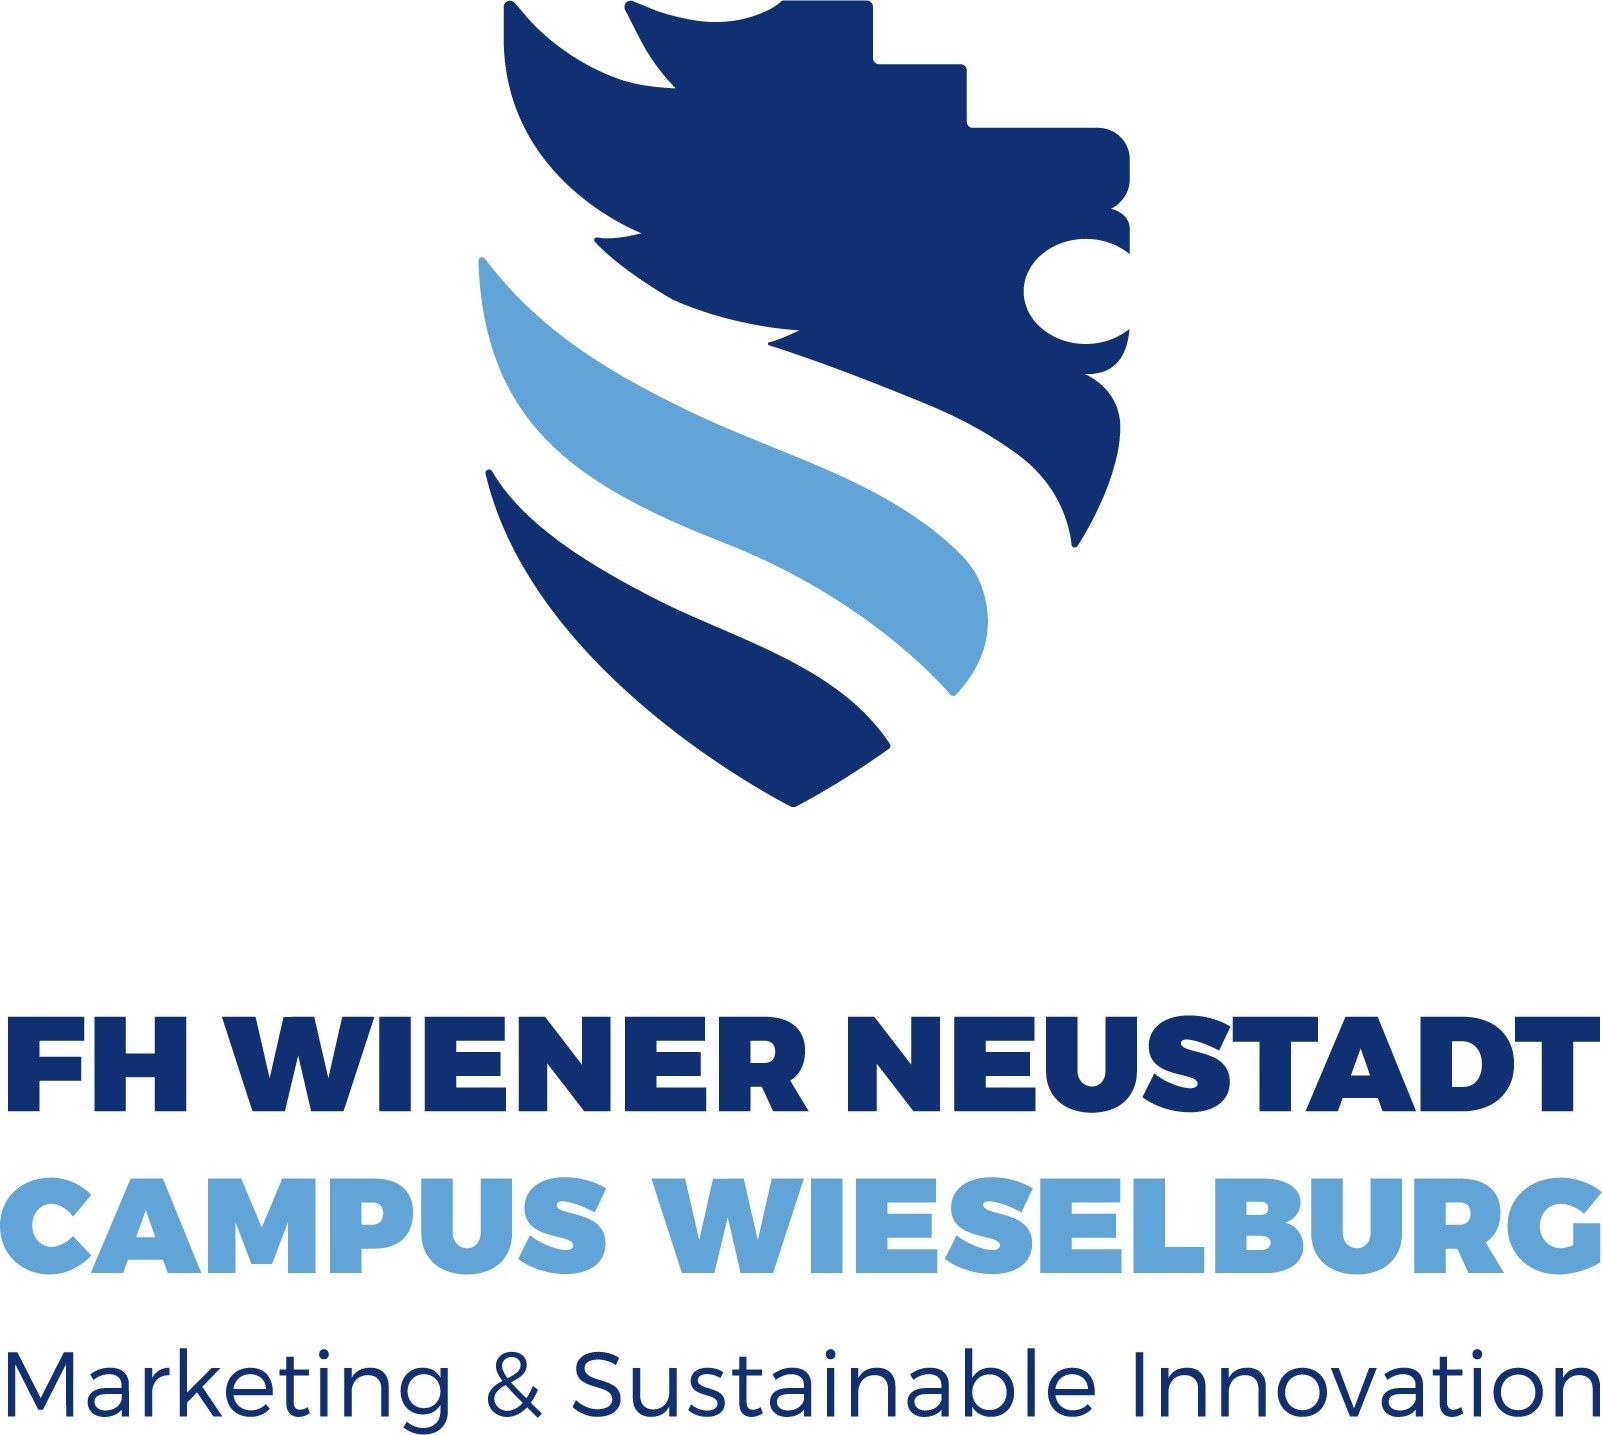 Campus Wieselburg vertikal Web.jpg